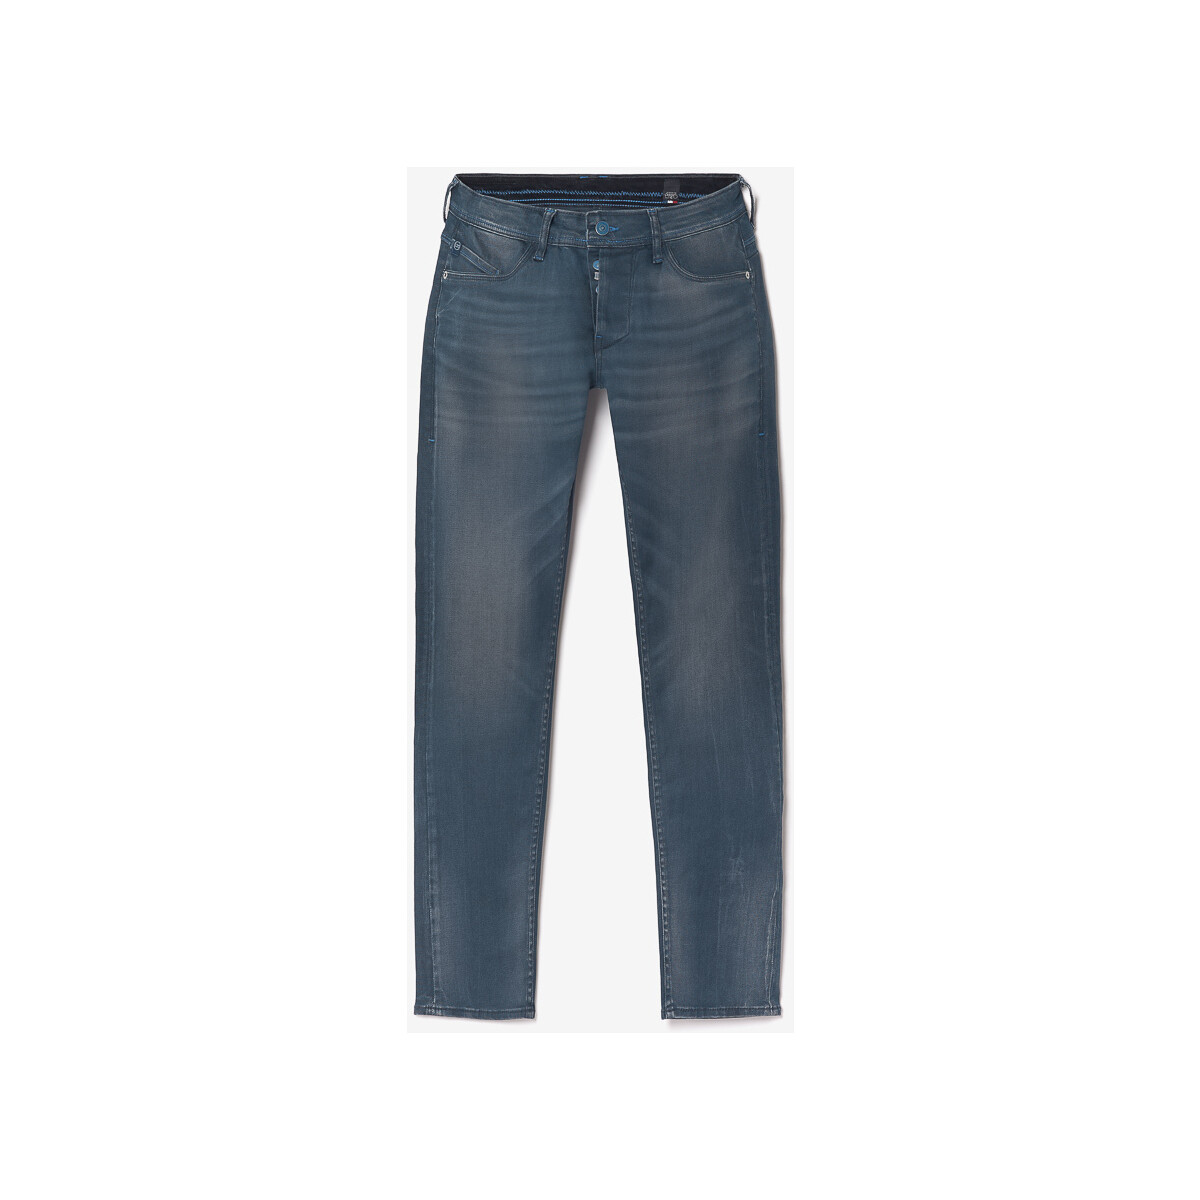 Le Temps des Cerises Bleu Musset 700/11 adjusted jeans 